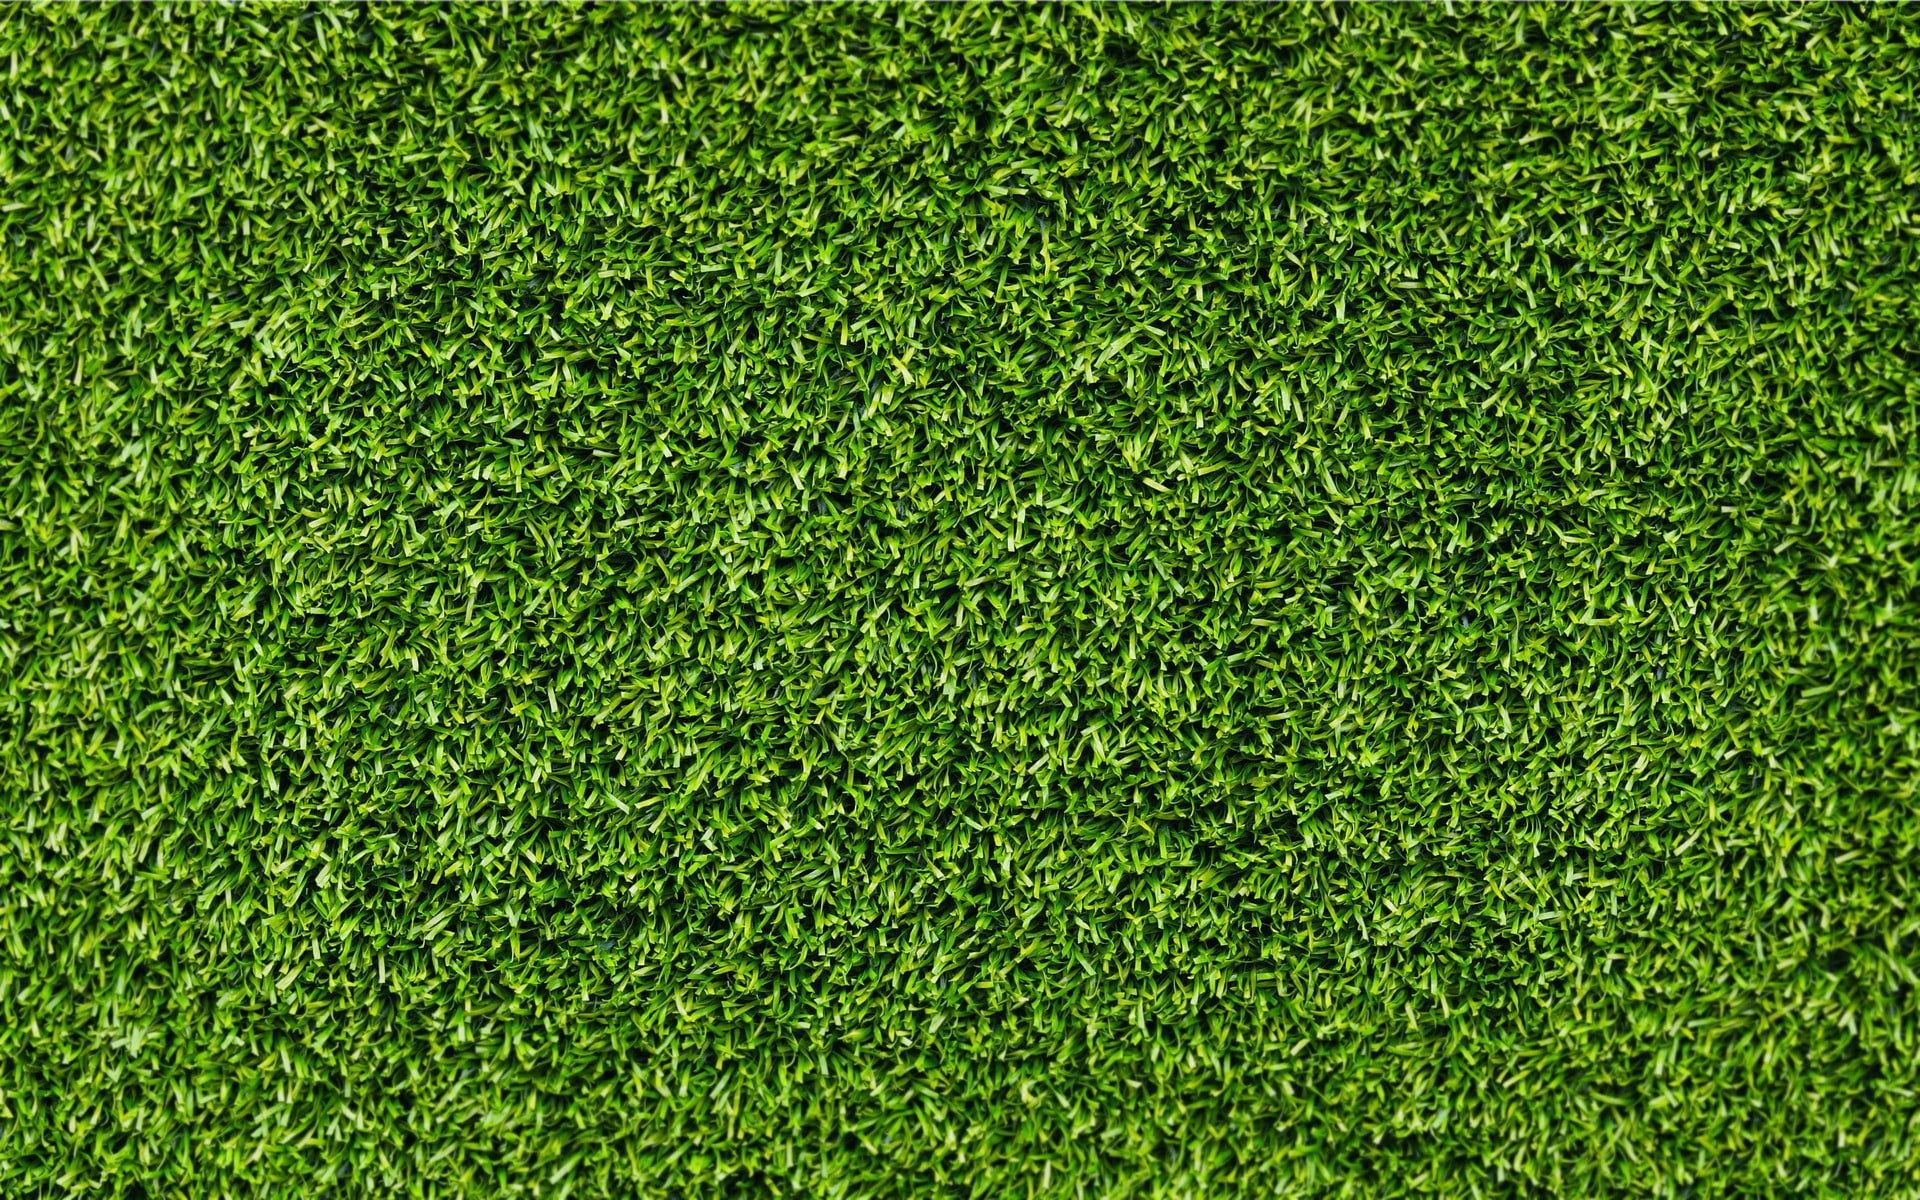 green grass #grass #texture P #wallpaper #hdwallpaper #desktop. Grass textures, Grass background, Grass vector